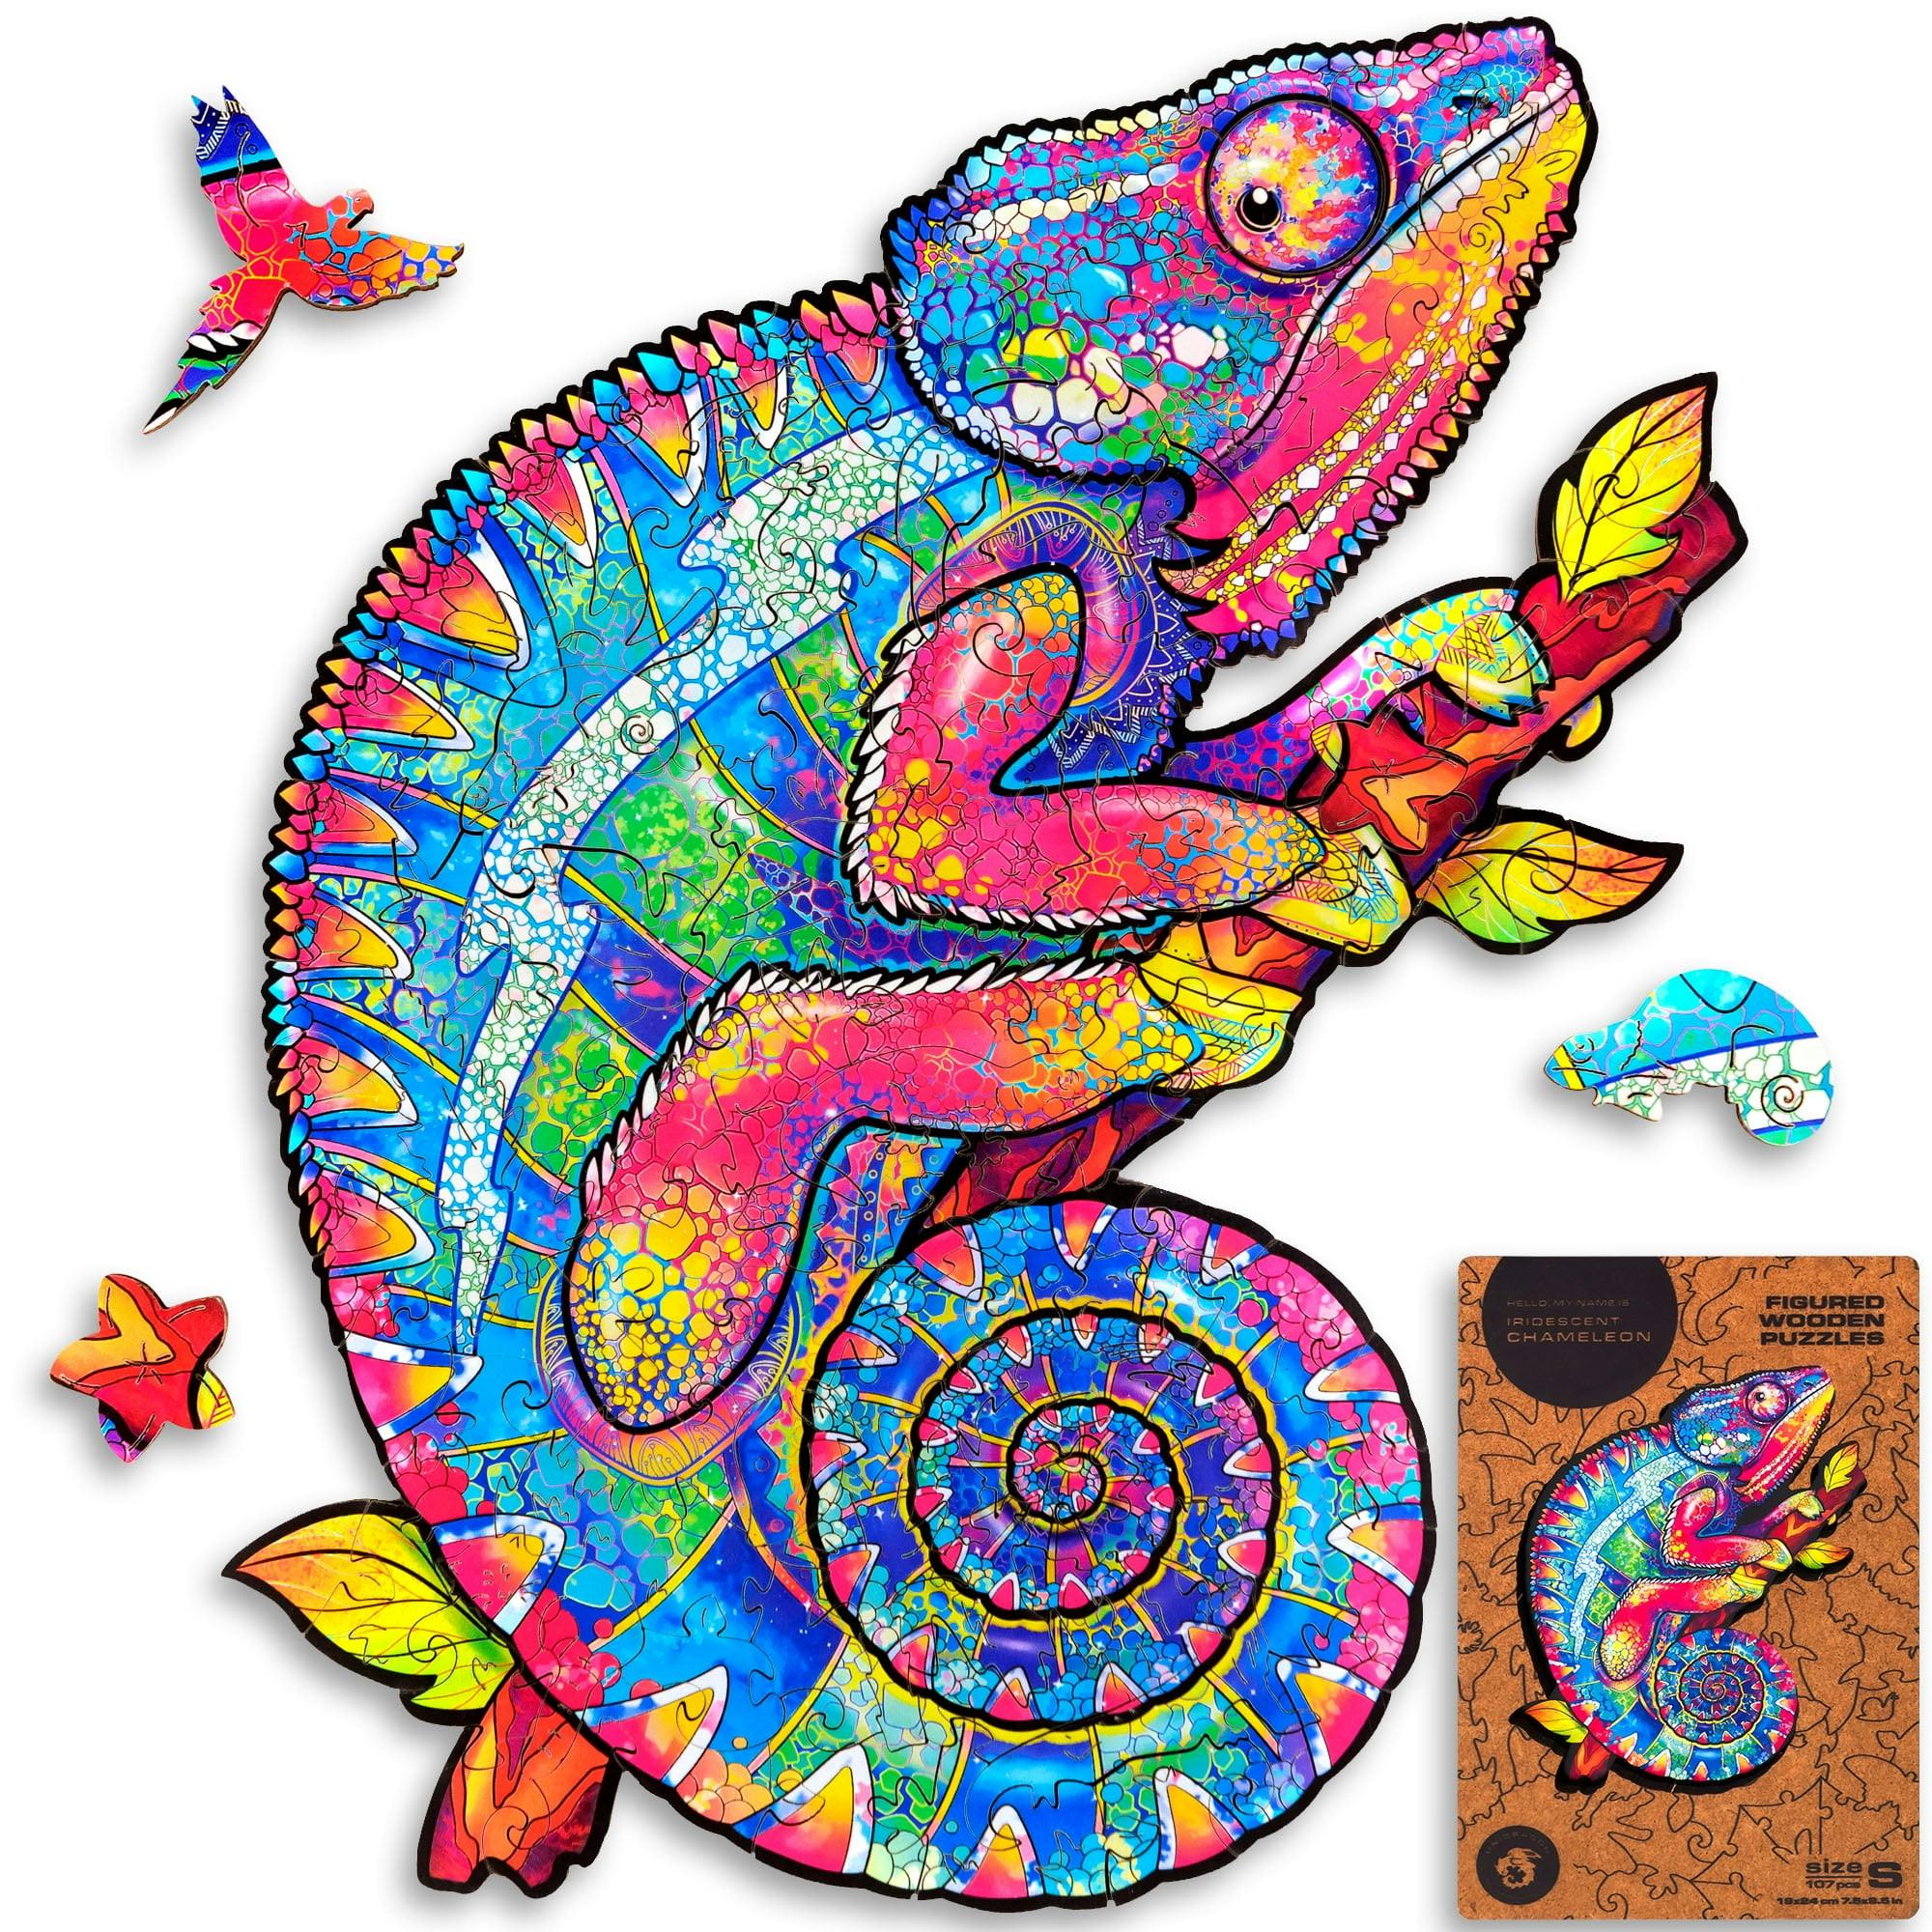 Enchanted Iridescent Chameleon Wooden Puzzle - 107 Unique Pieces